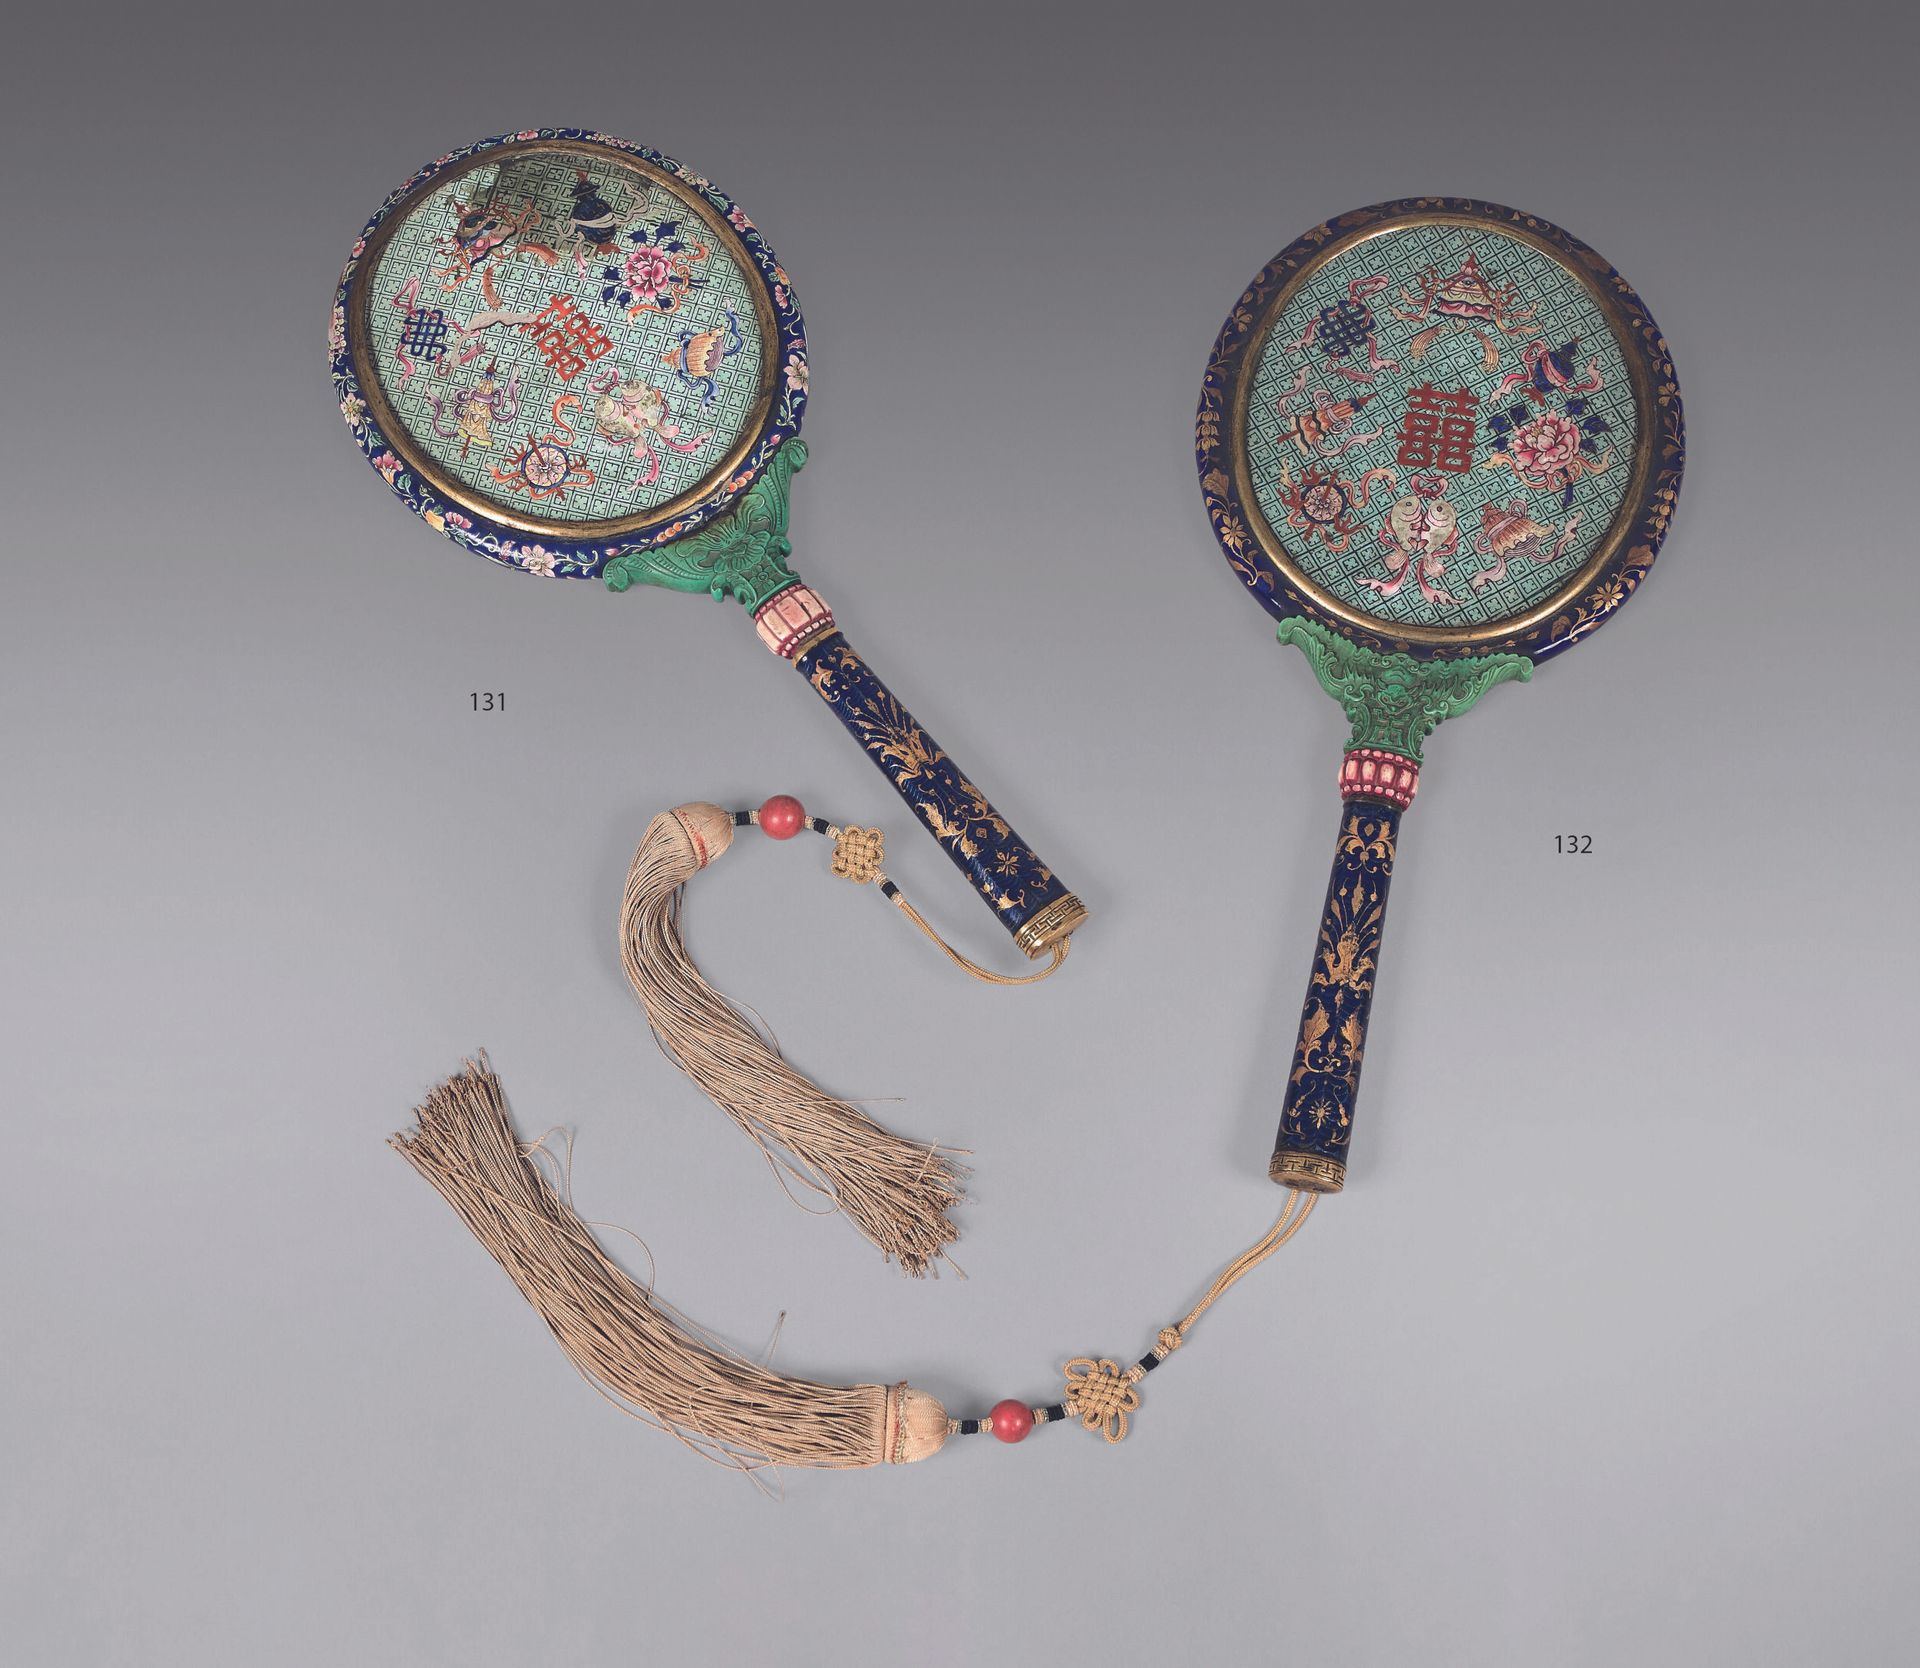 Null 中国--钱龙时期（1736-1795）。 
铜和彩绘珐琅手镜，手柄和边沿都是金色的珐琅，蓝底饰有荷花，背面珐琅有 "双喜 "字样，周围有八个佛教符号（&hellip;